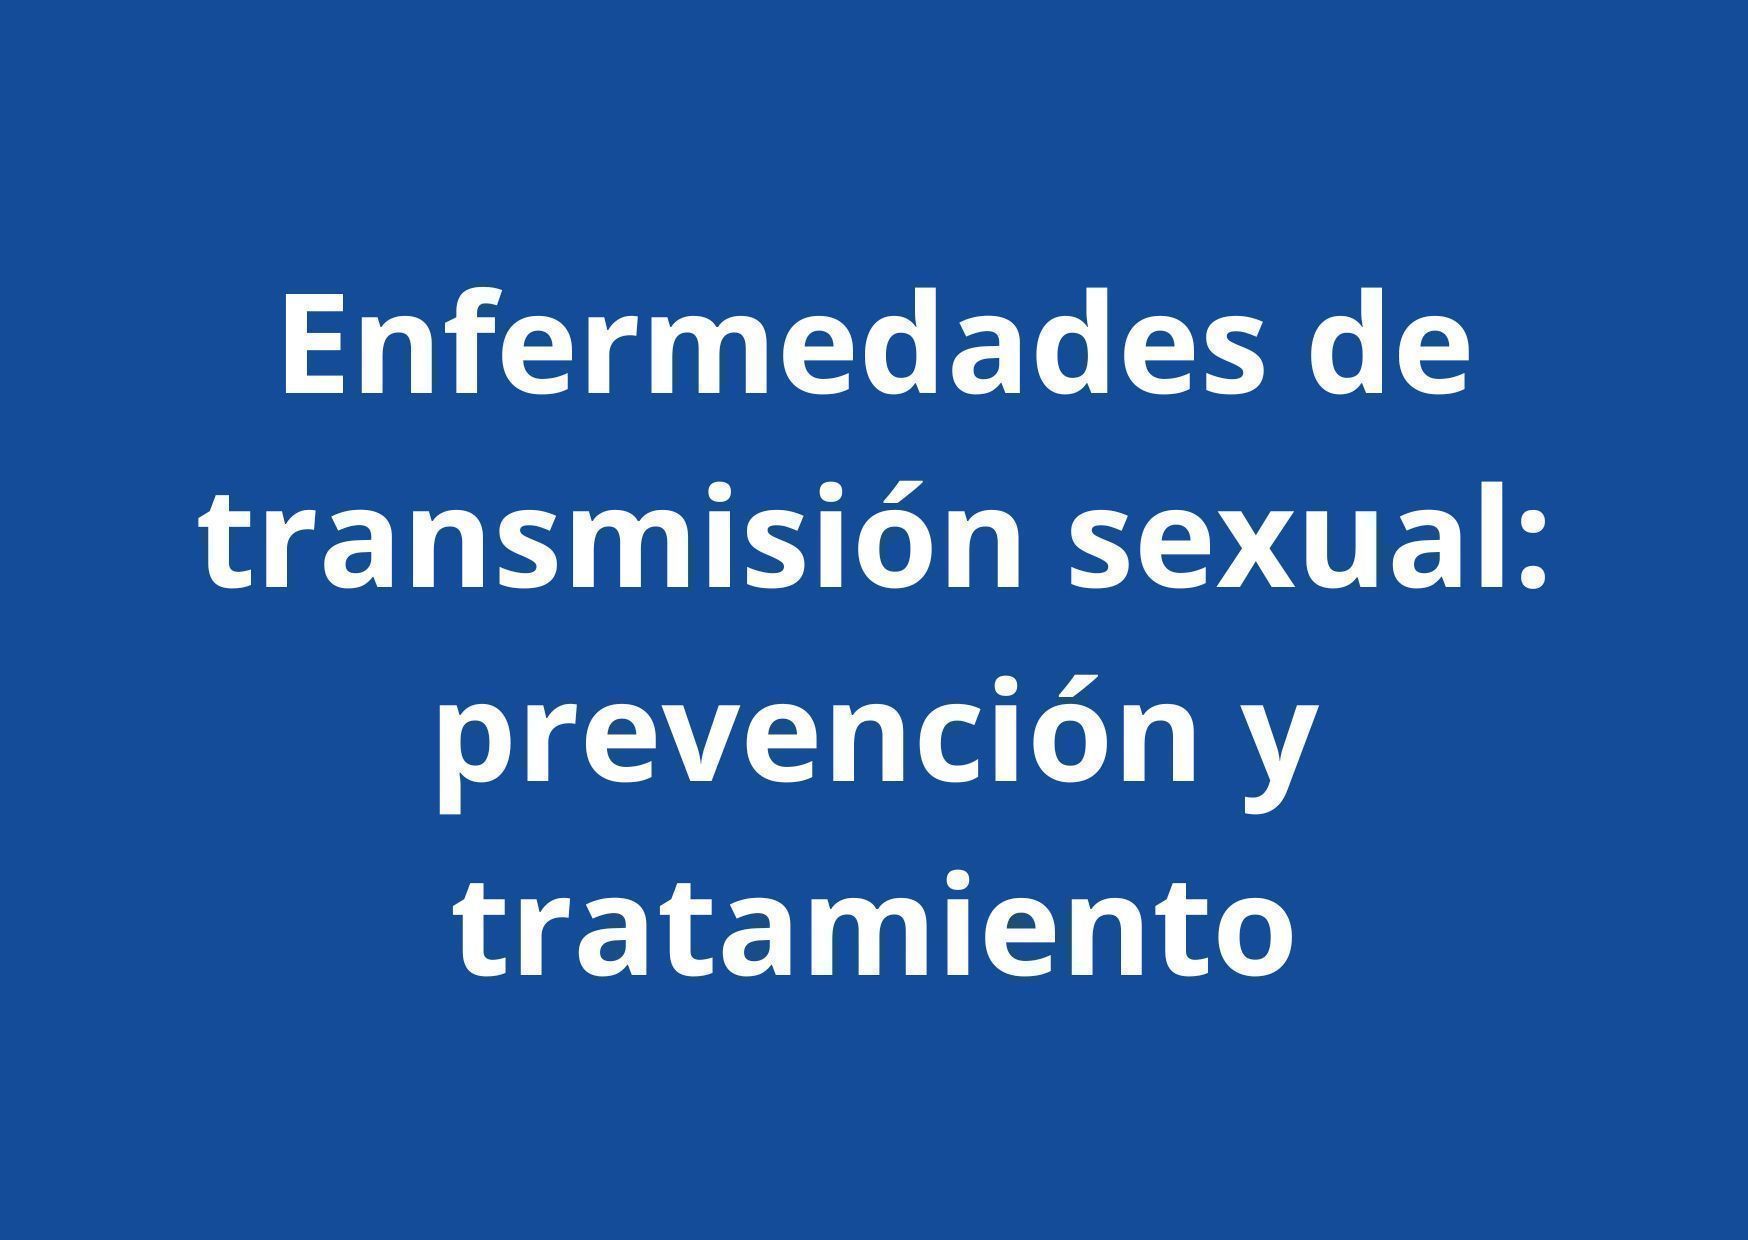 Blog que aborda cómo prevenir y tratar las enfermedades de transmisión sexual